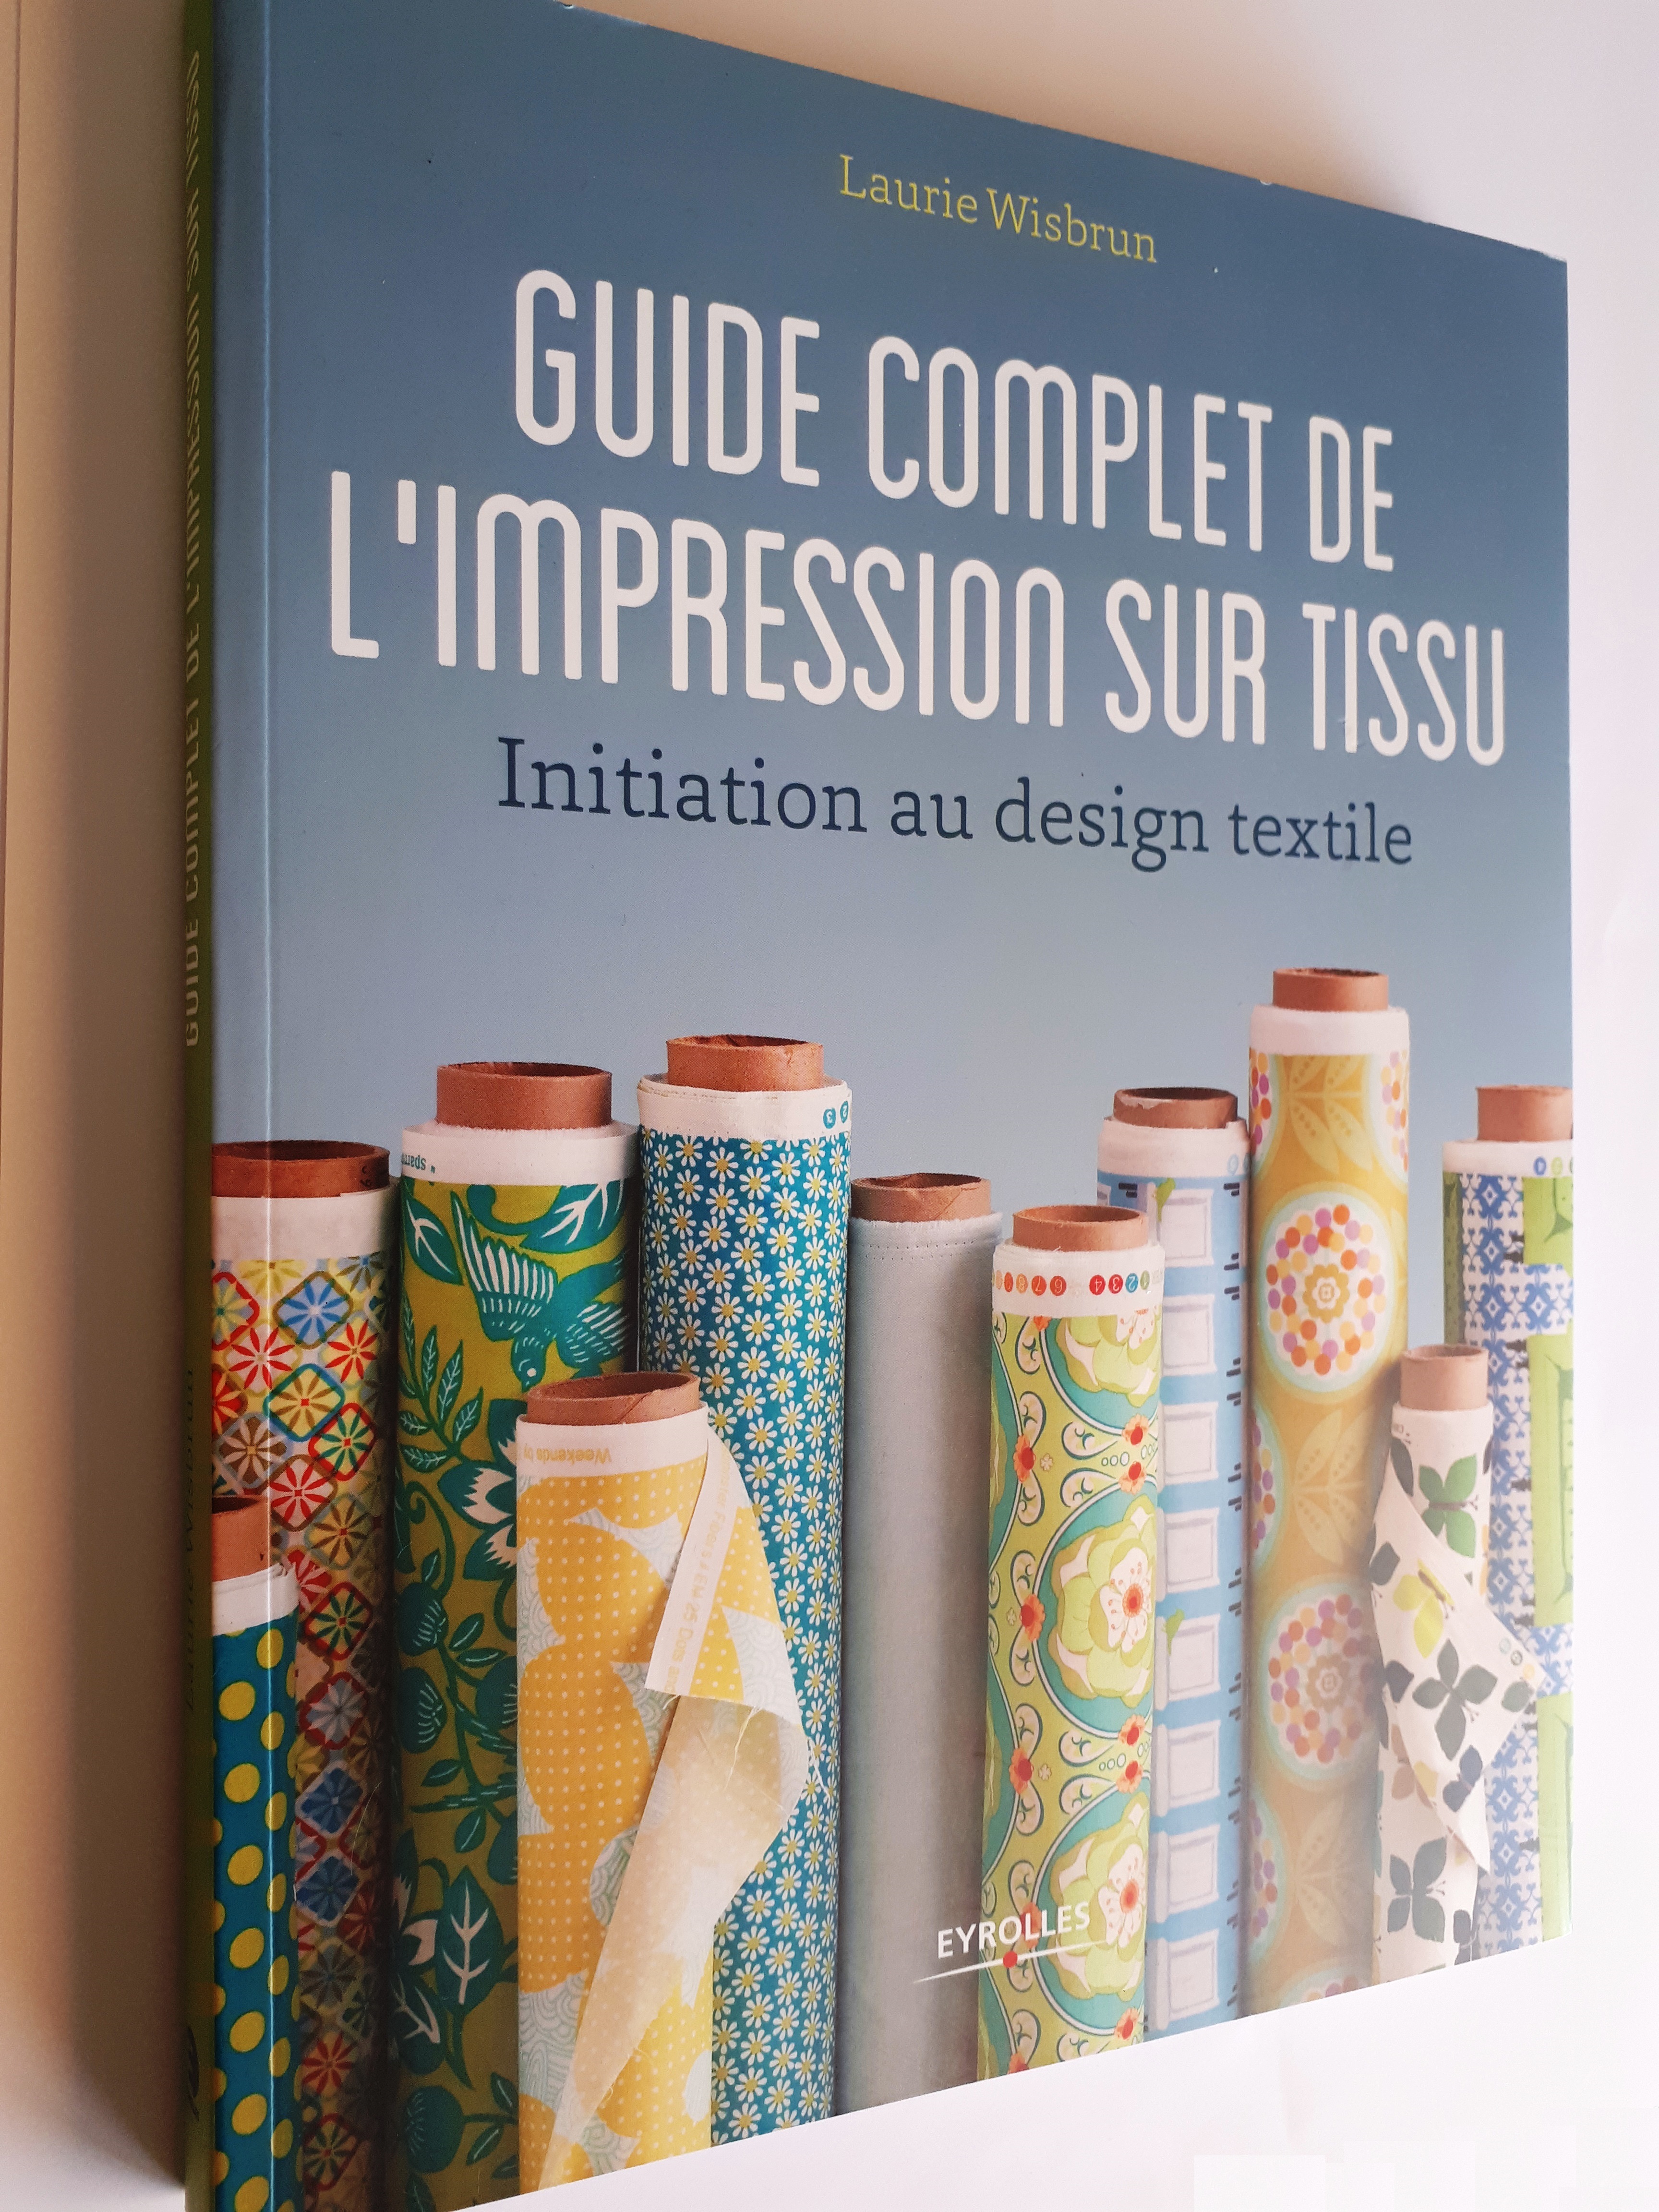 Guide complet de l'impression sur tissu : un très bon livre pour tous ceux qui veulent créer leurs propres motifs textiles et se lancer dans l'impression sur tissu !